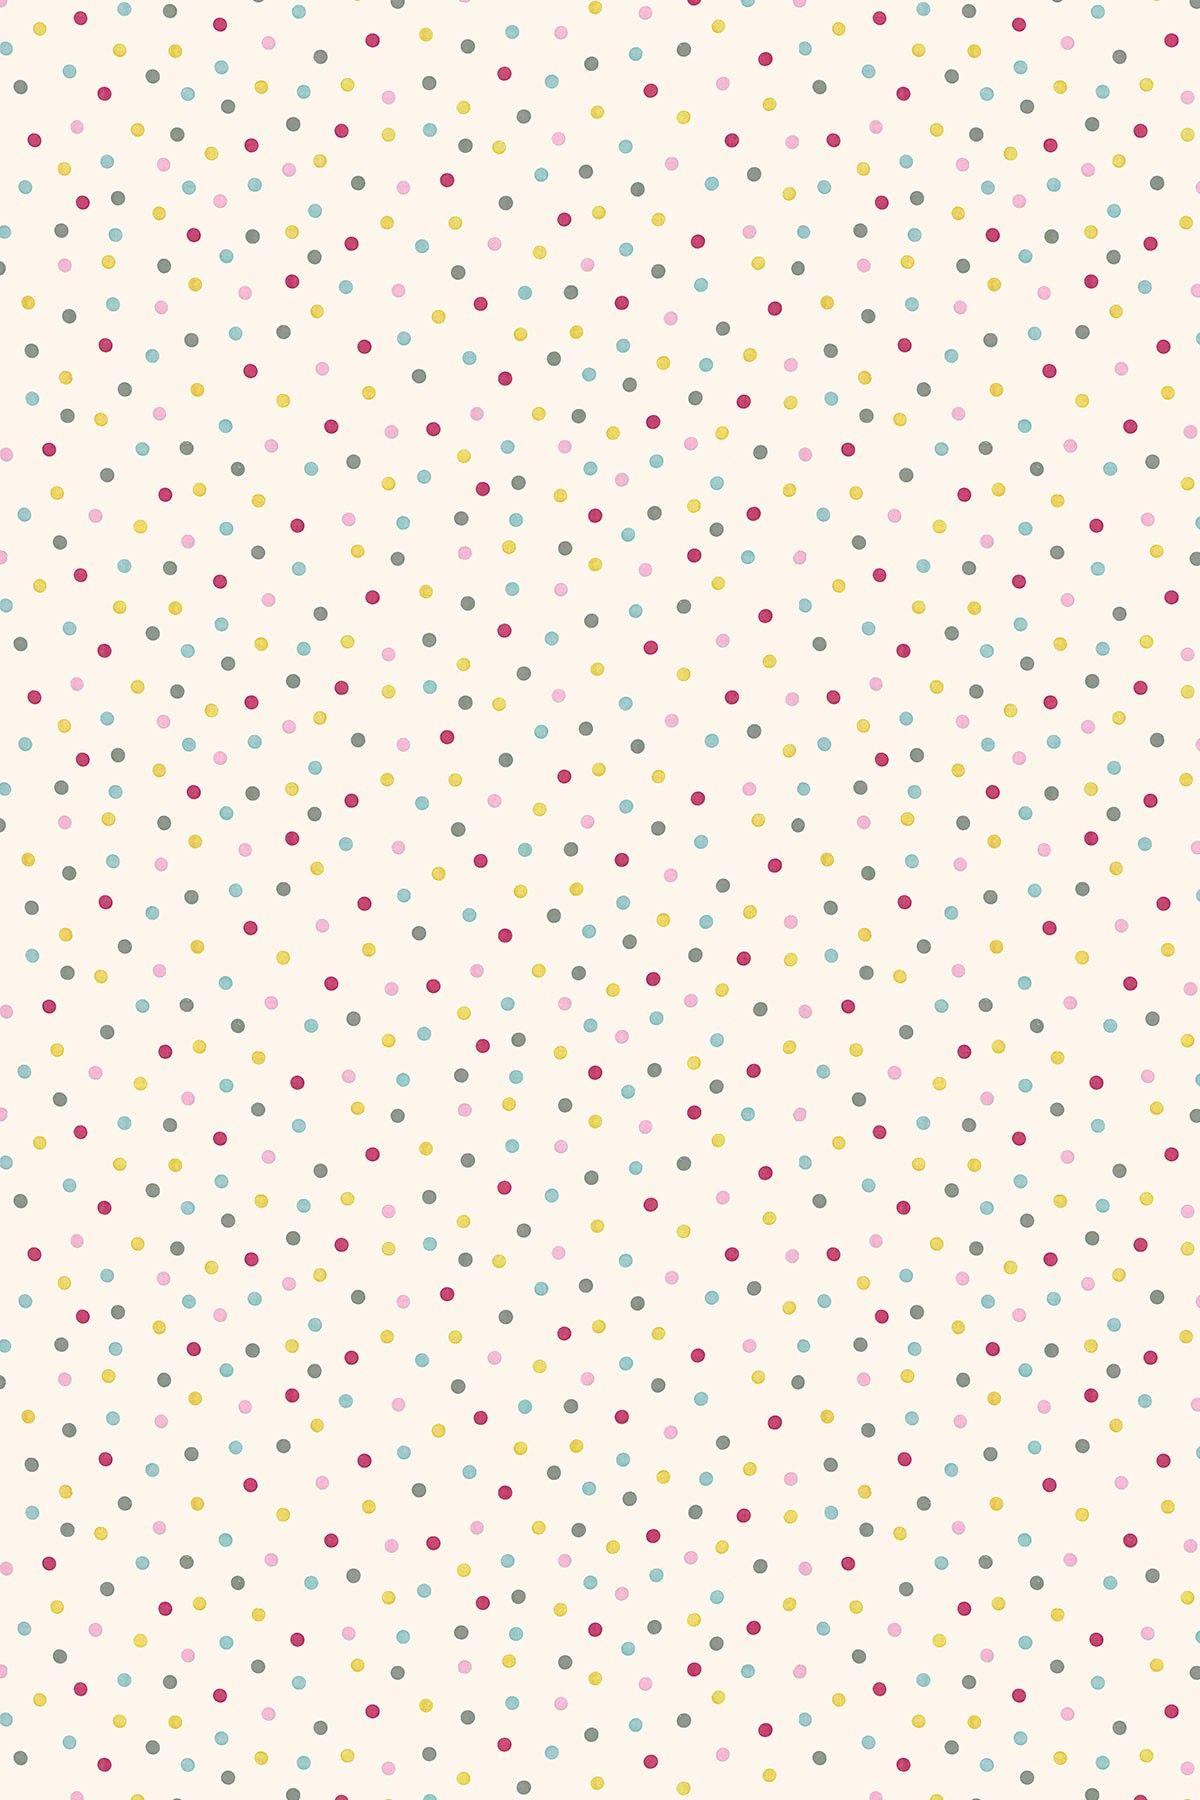 Gold Polka Dots Background Gold And Pink Polka Dots Wallpaper